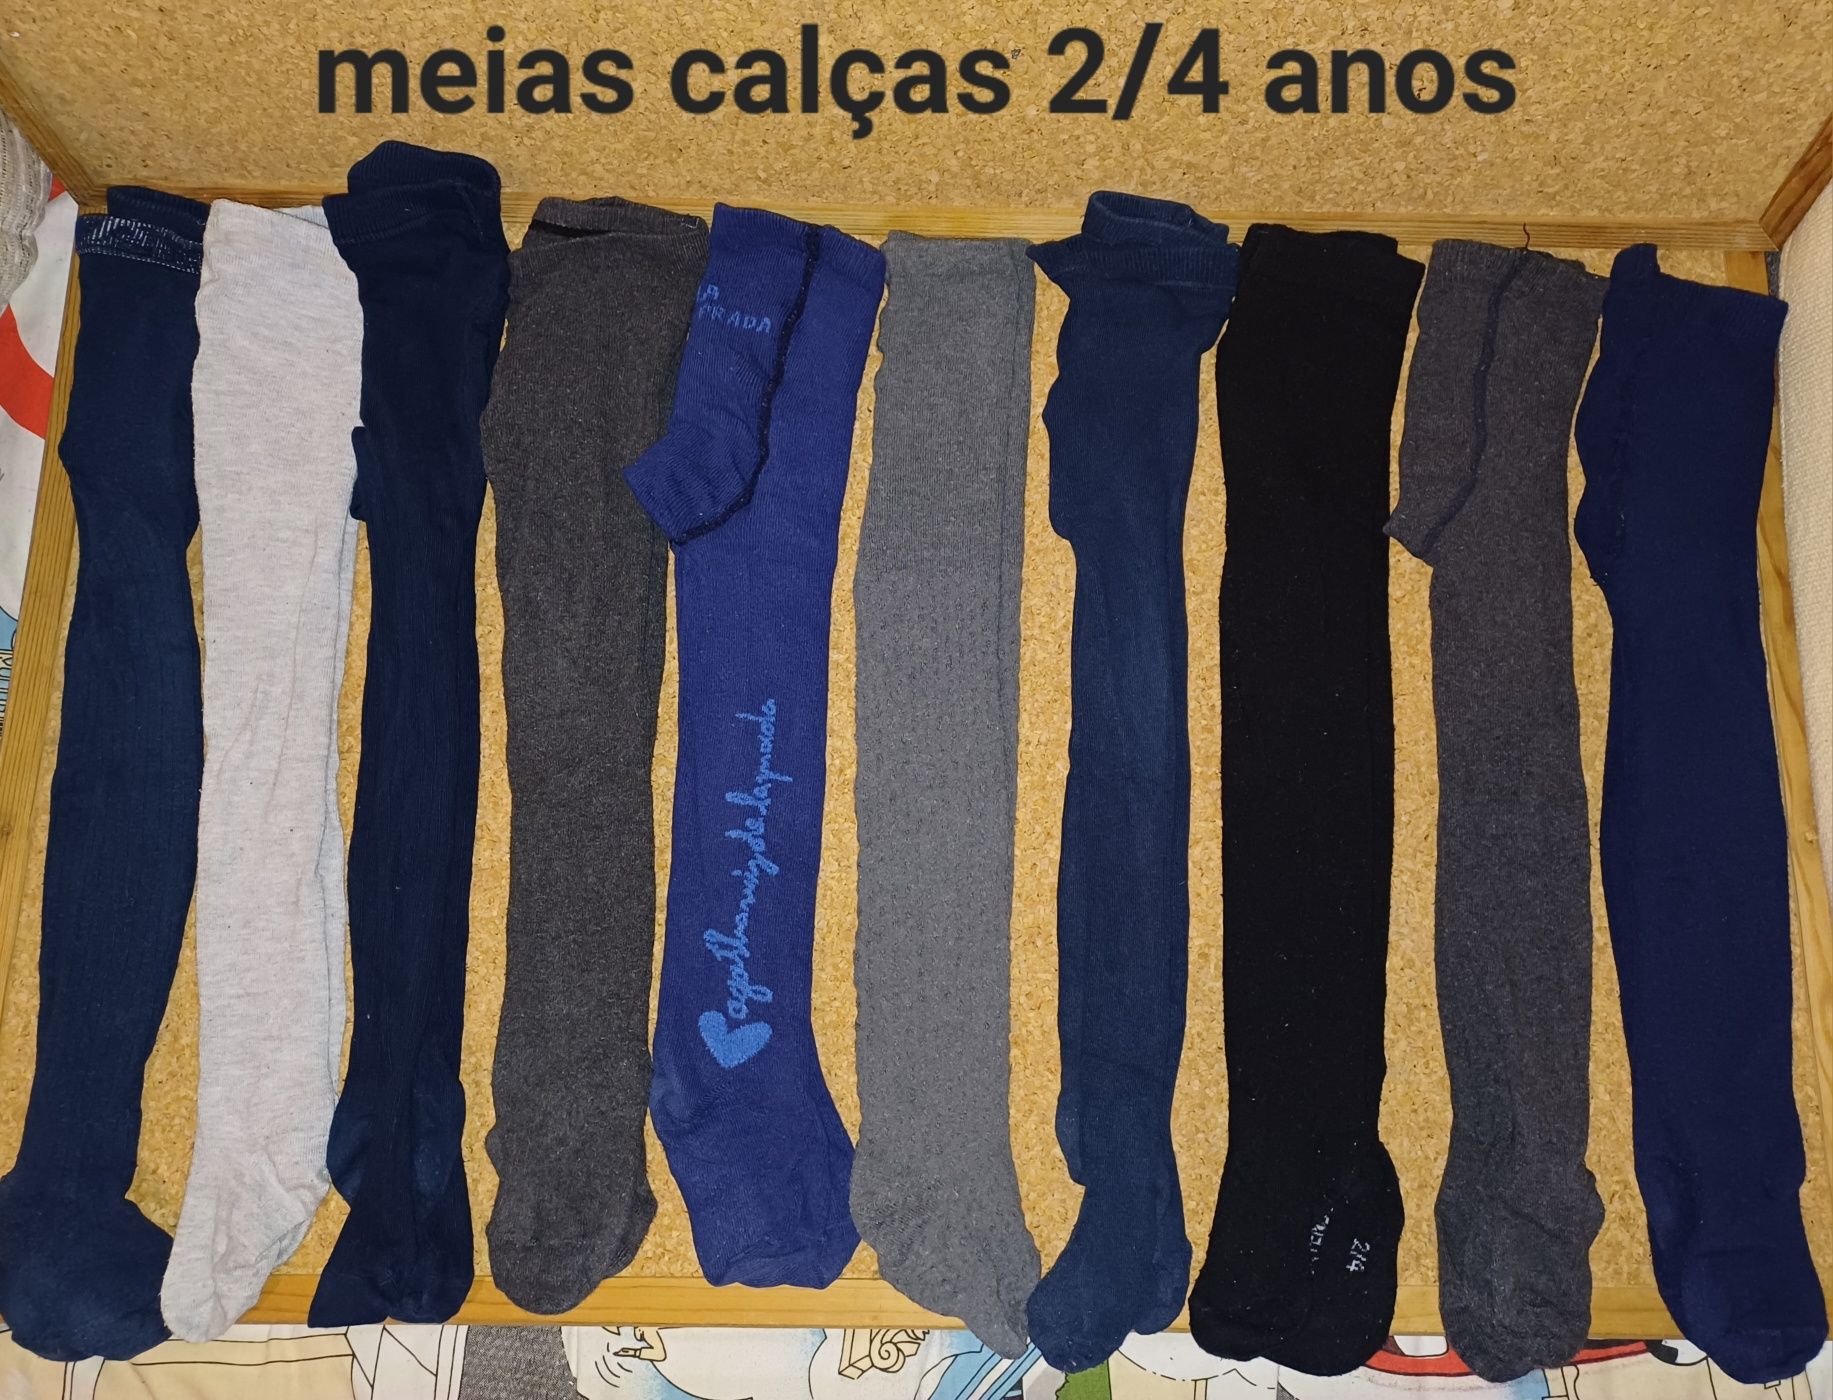 Meias calças 2/4 anos, criança, menina, menino